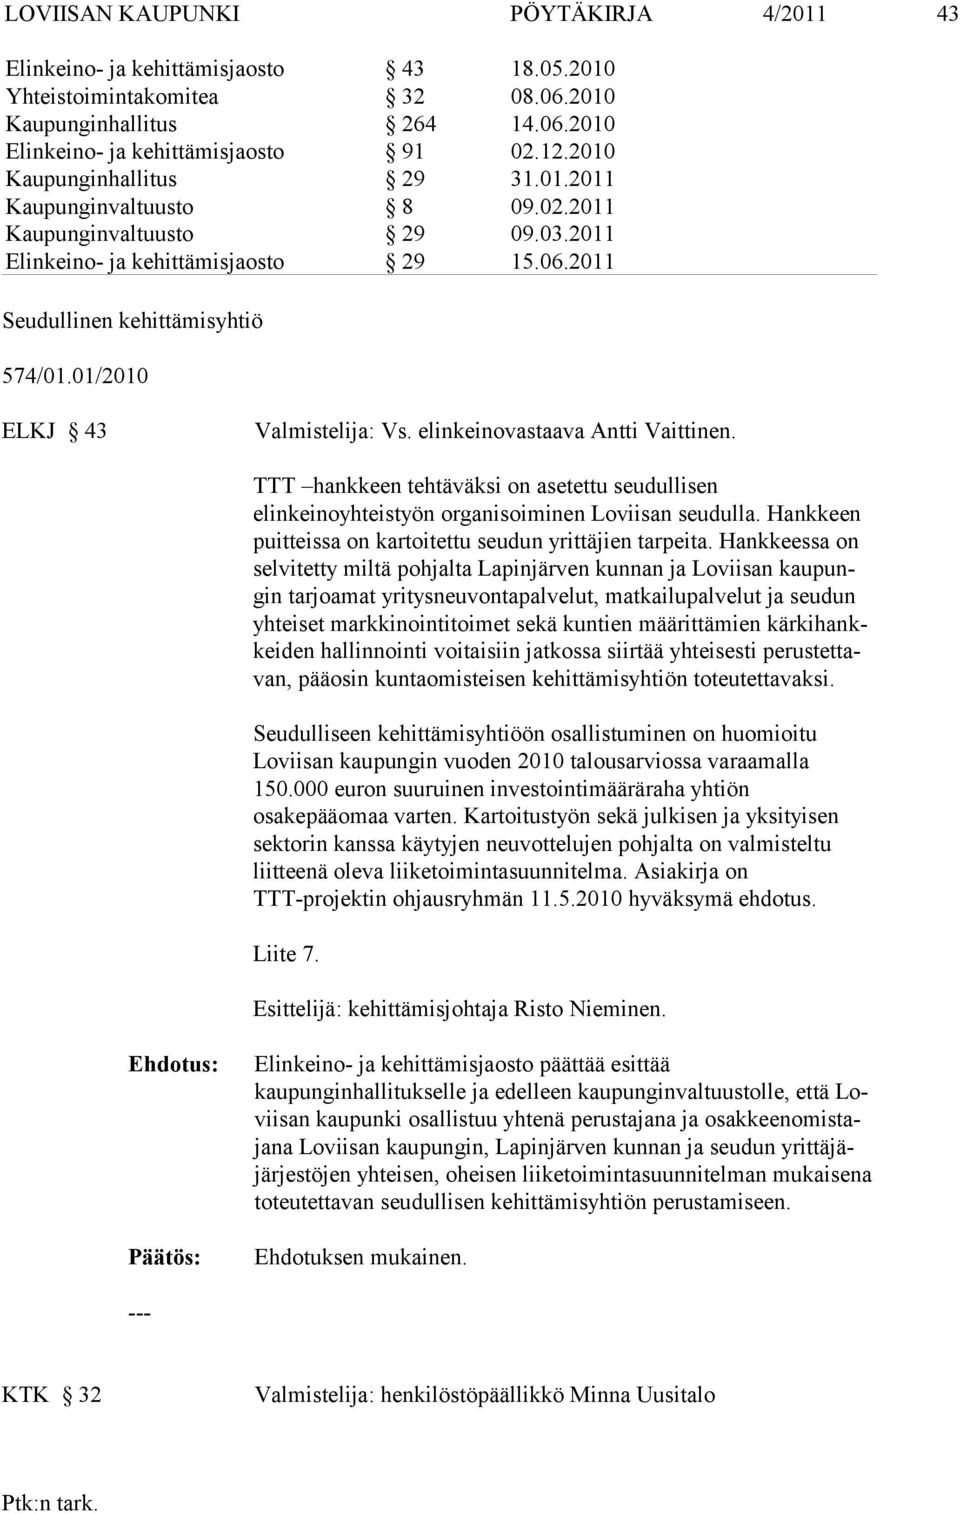 01/2010 ELKJ 43 Valmistelija: Vs. elinkeinovastaava Antti Vaittinen. TTT hankkeen tehtäväksi on asetettu seudullisen elinkeinoyhteistyön orga nisoiminen Loviisan seudulla.